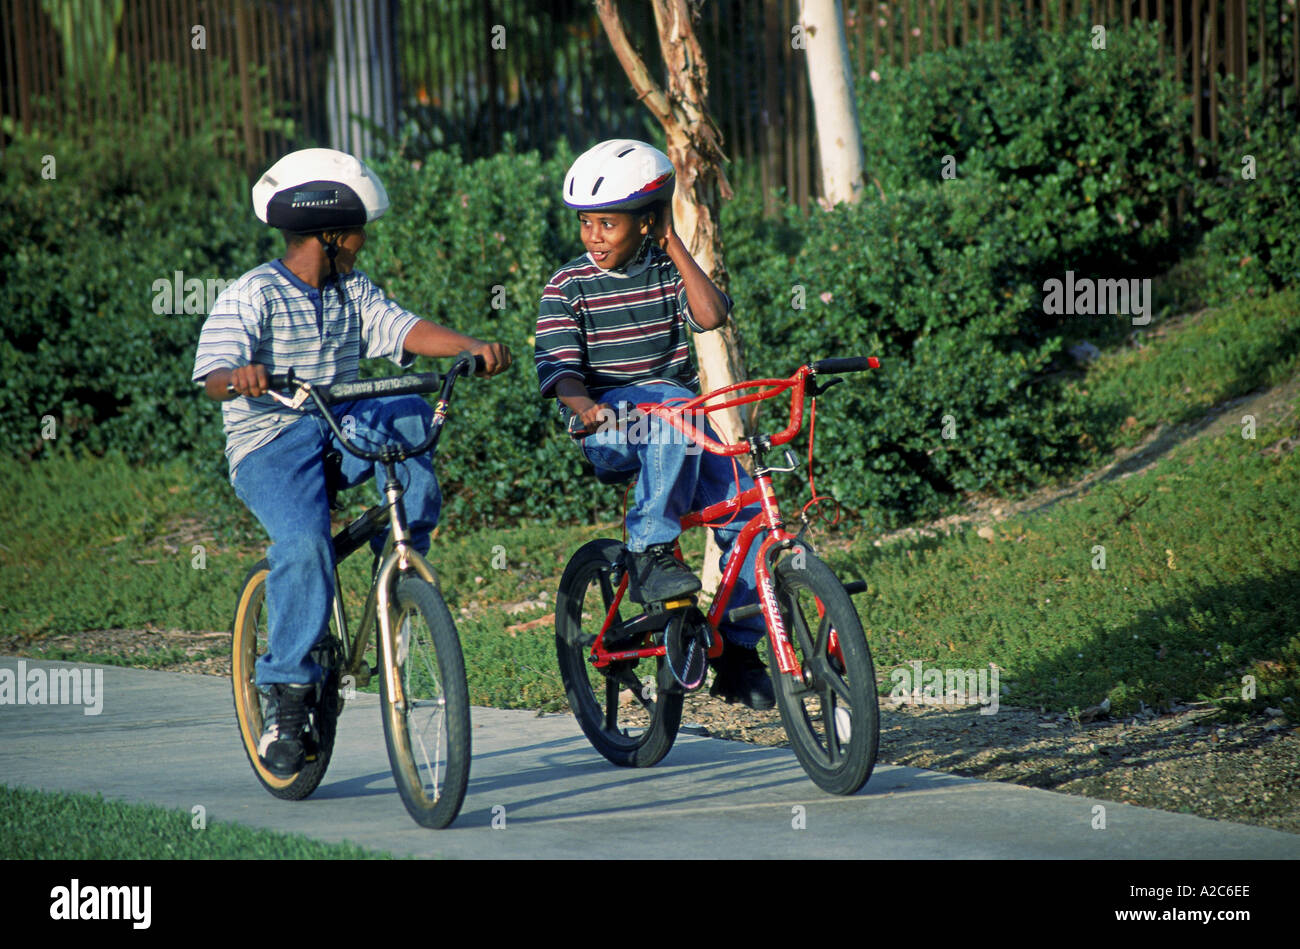 Bambini Bambino bicicletta equitazione biciclette a noleggio multi razziale multiculturale di diversità culturale suburbana due ragazzi 8-10 anni vecchio la sicurezza negli Stati Uniti Foto Stock